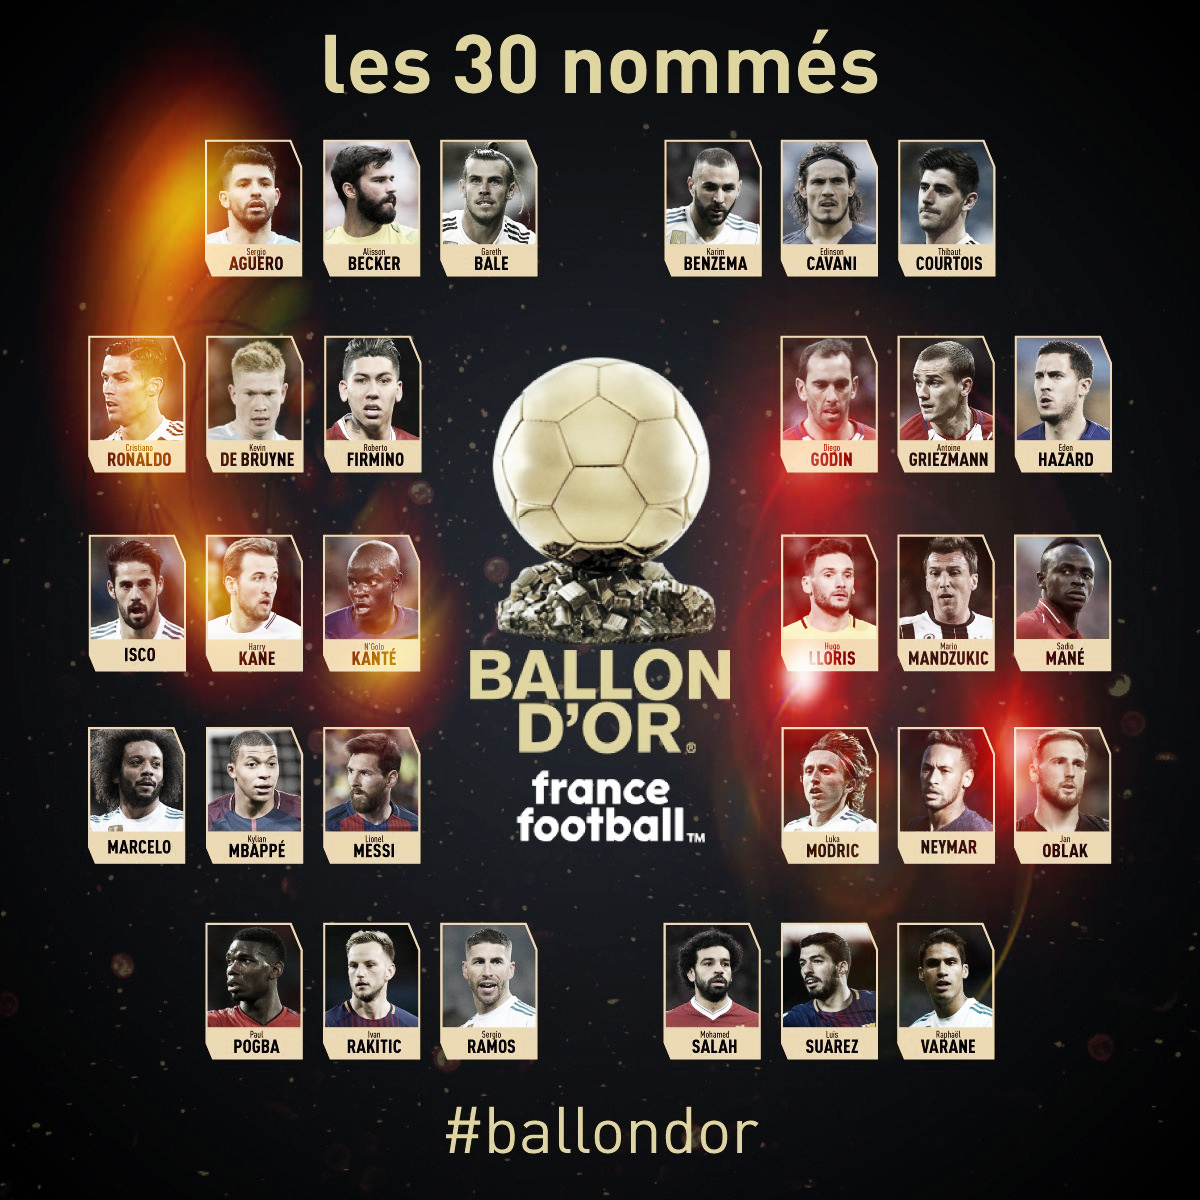 Los 11 jugadores de la Premier League nominados al Balón de
Oro